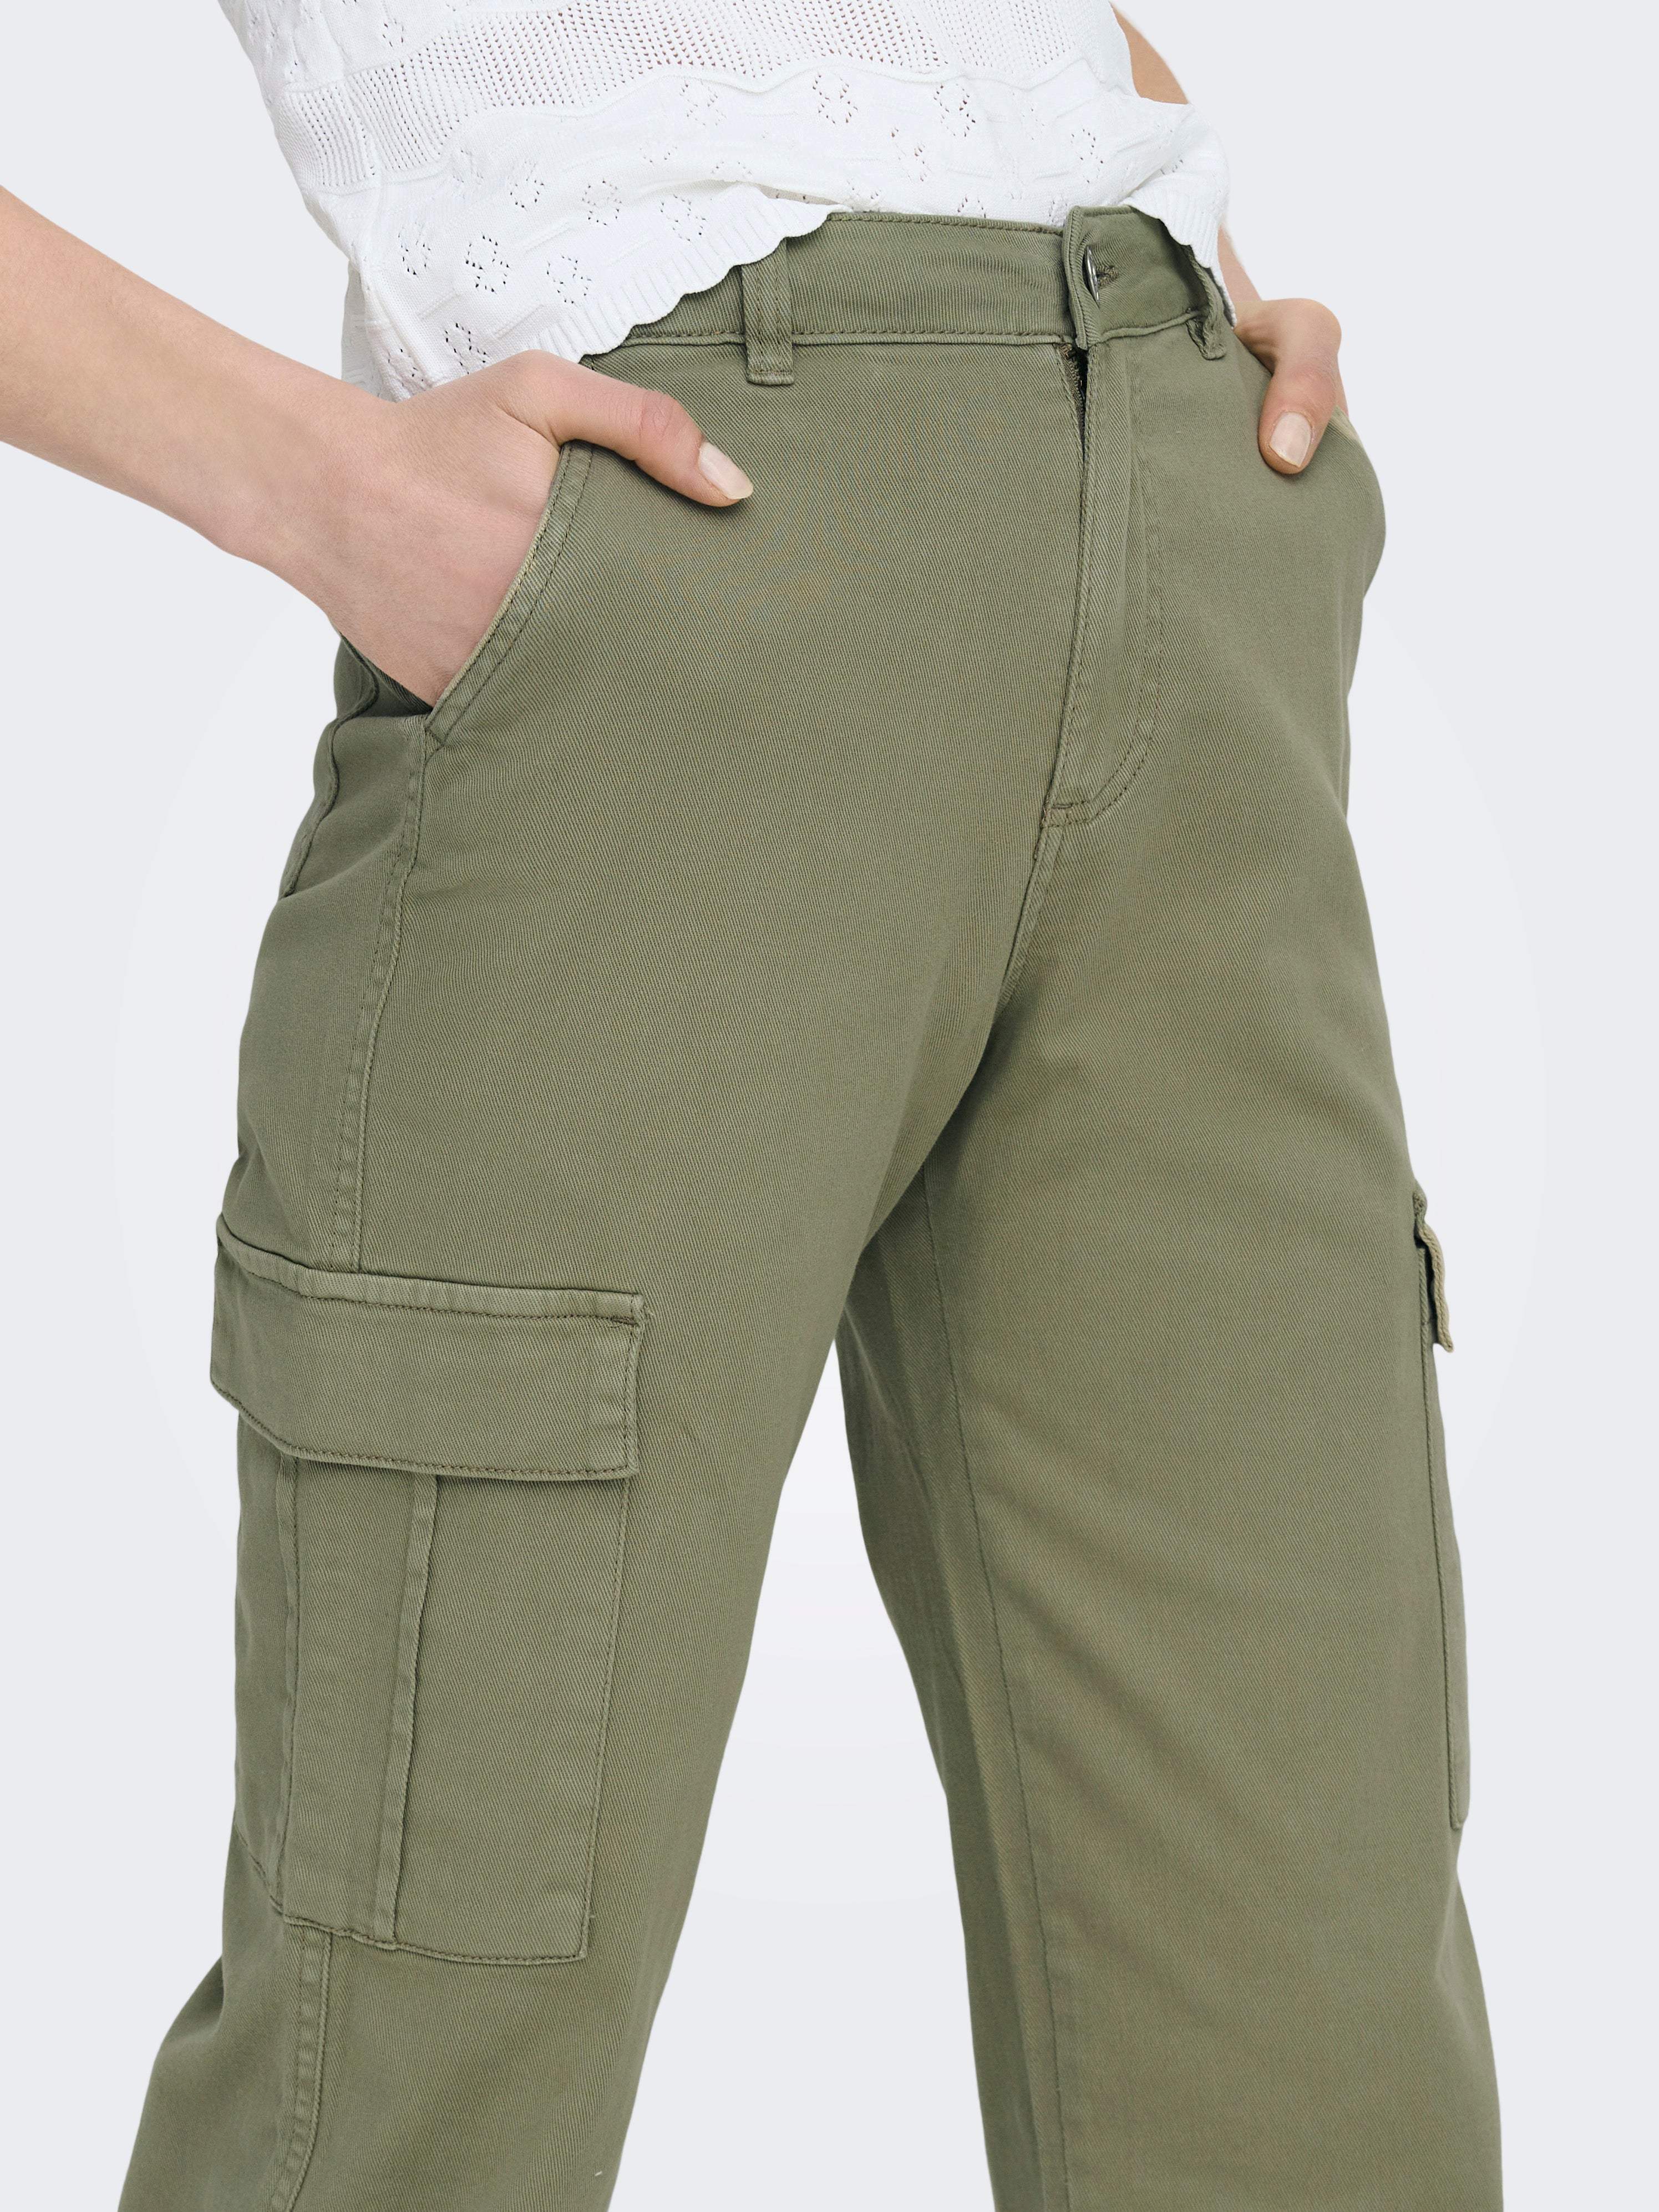 Pantalon Only cargo verde slim con puño y cinturón de mu